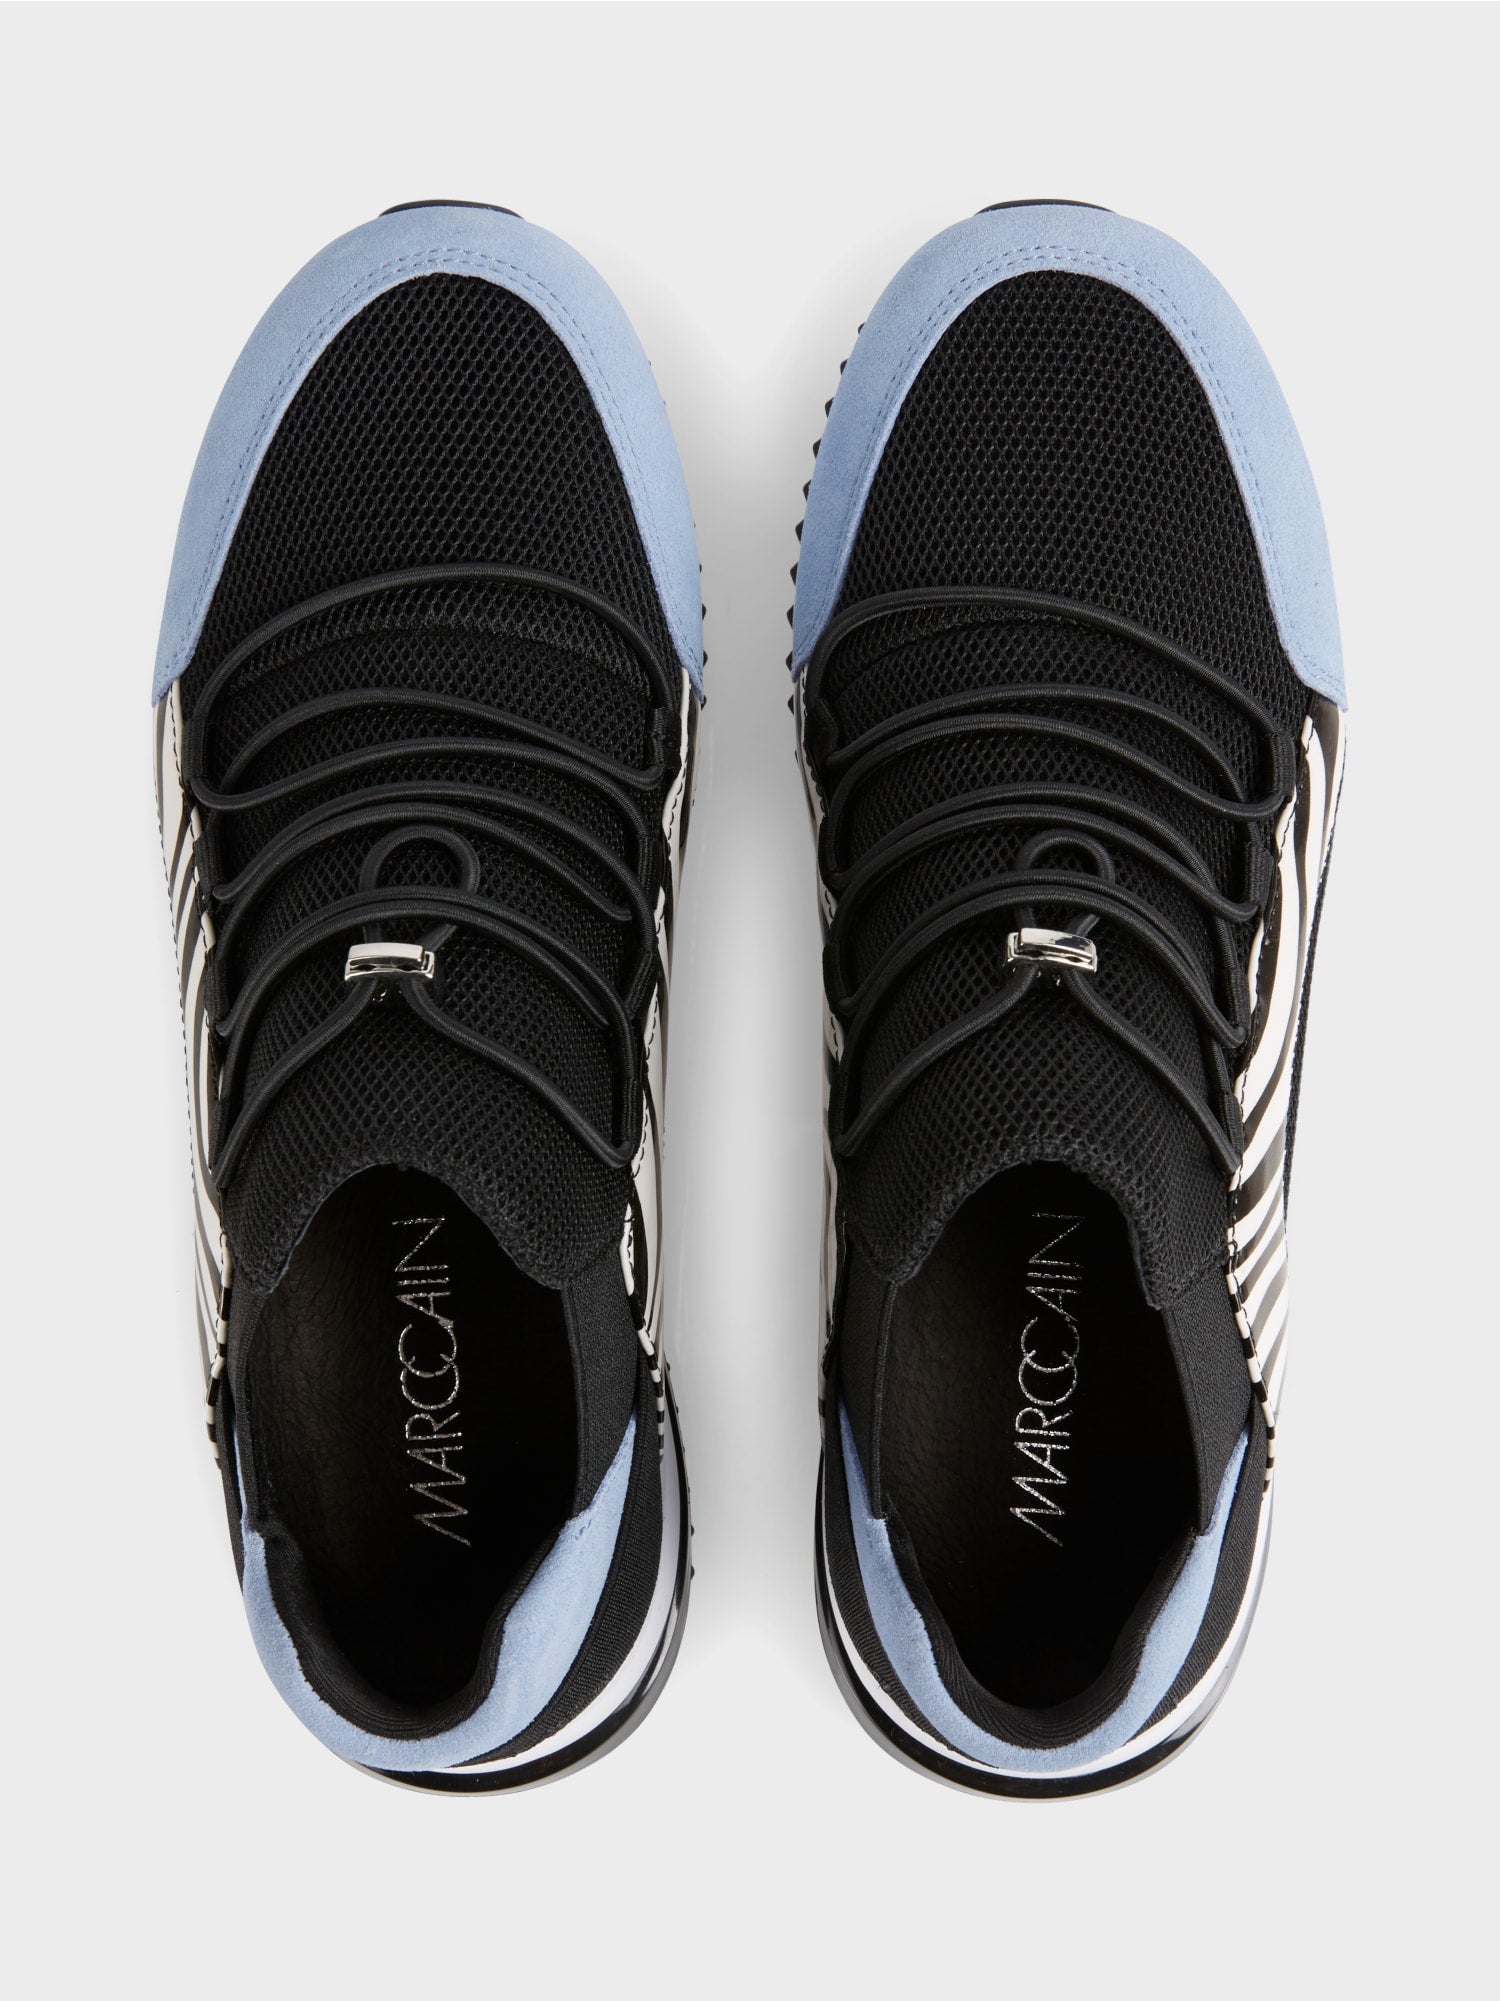 Blk/Blue Sneaker